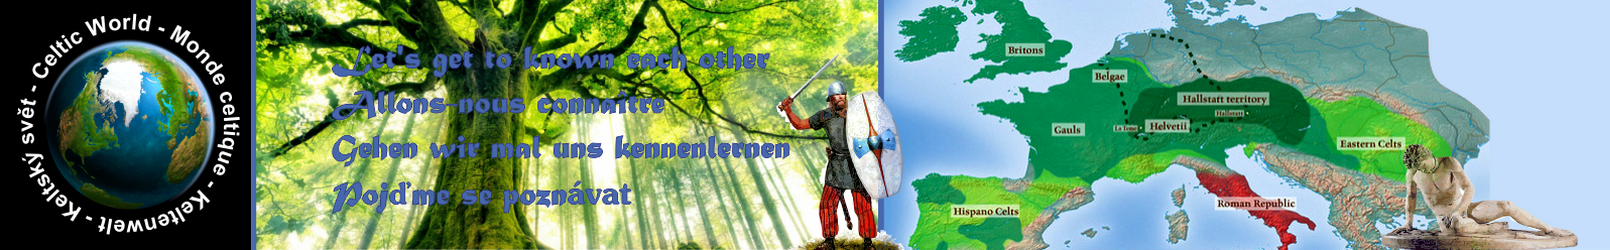 Celtic World - Monde celtique - Keltenwelt - Keltský svět